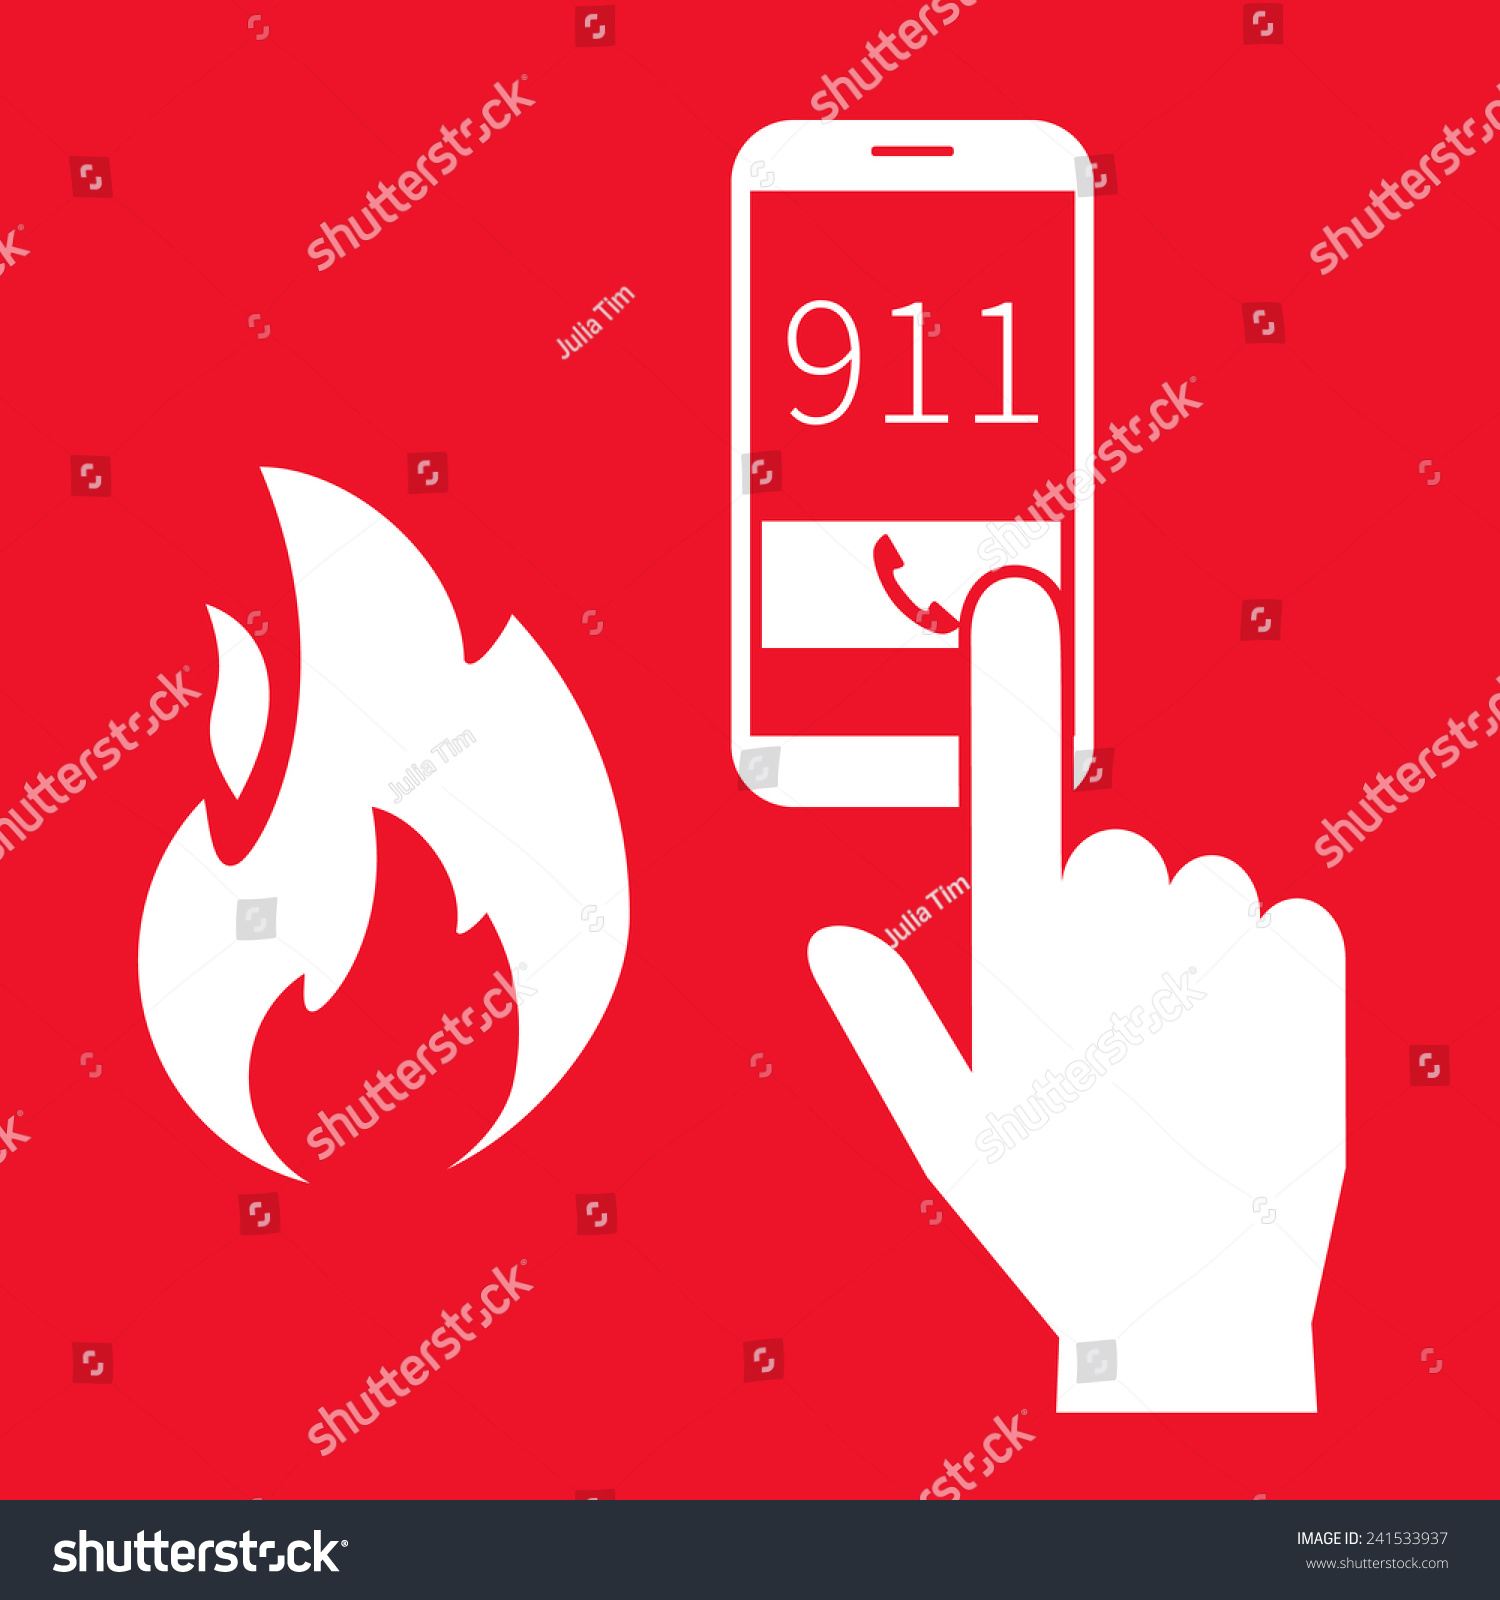 Emergency Fire Alert Via Telephone Illustration Stock Vector ...